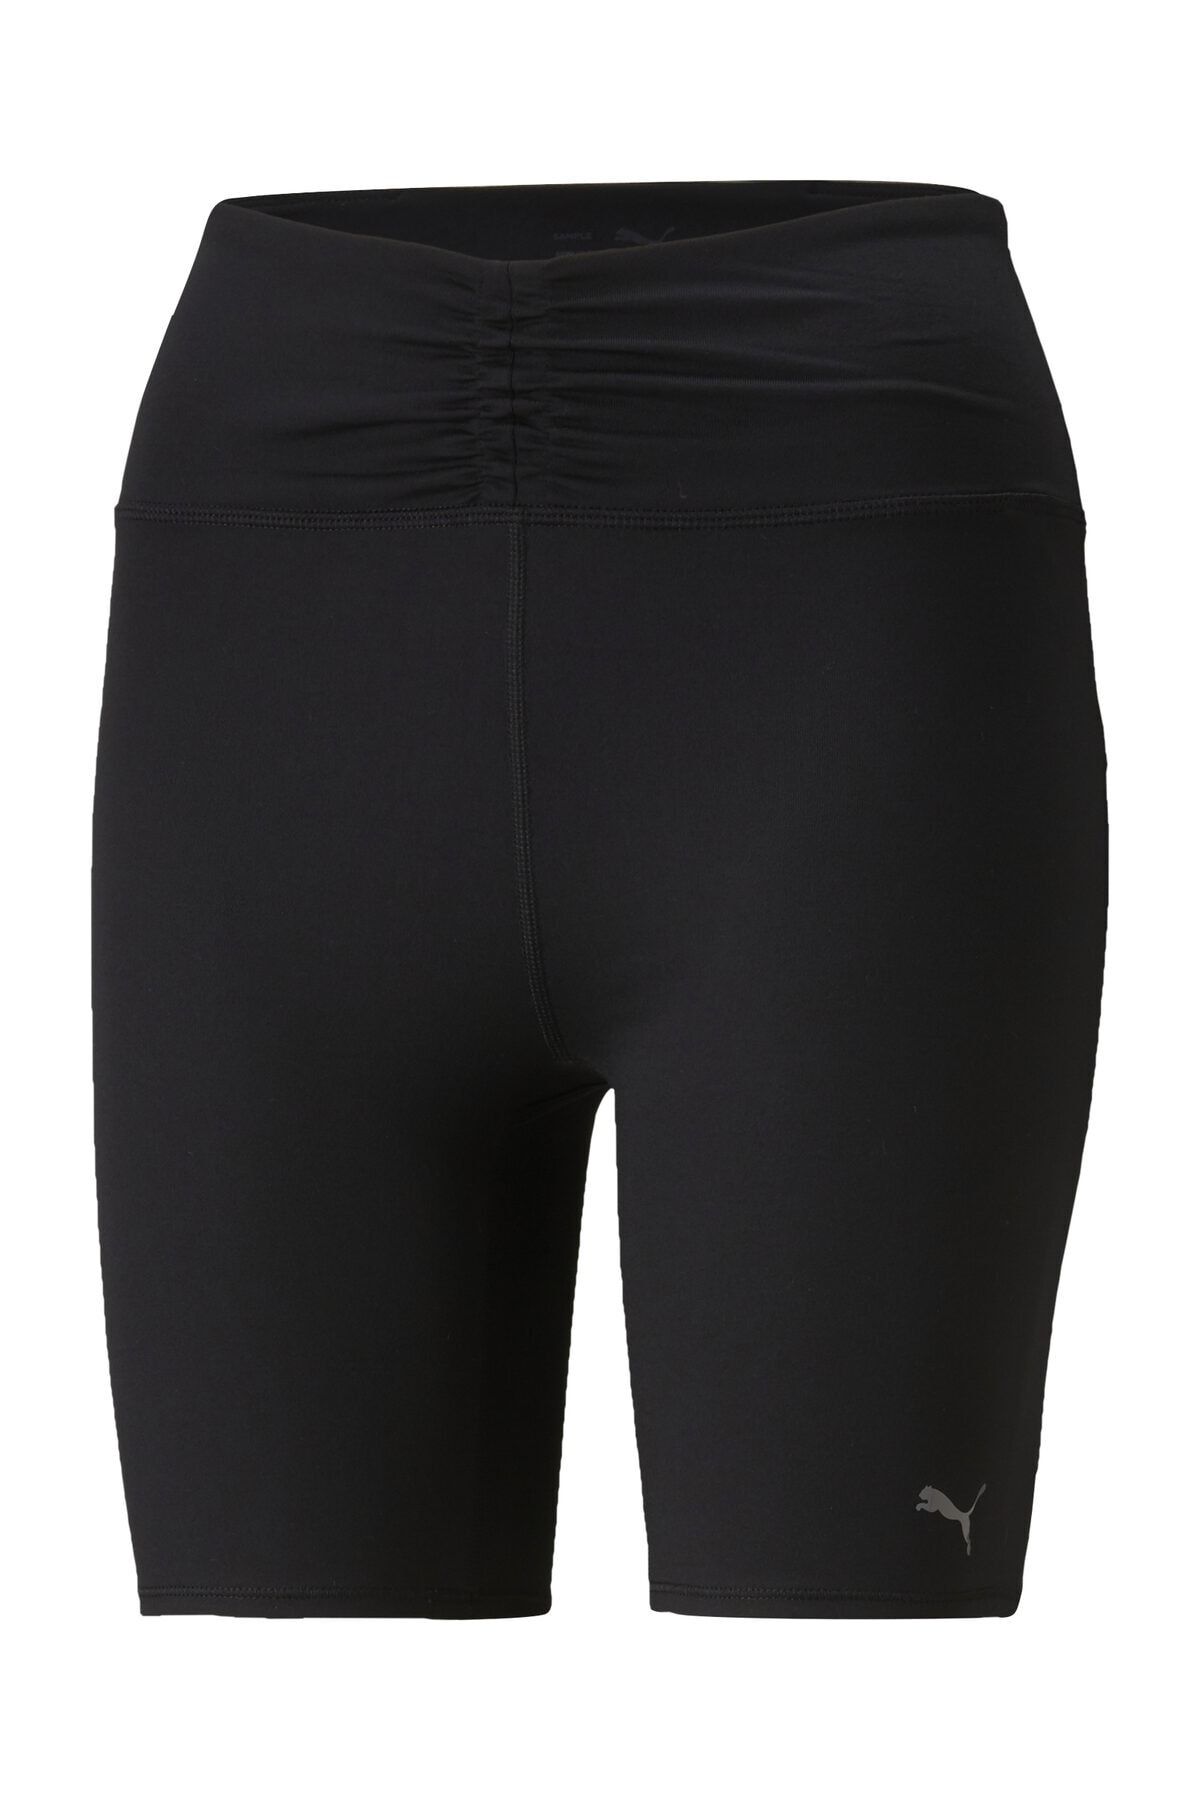 Nike Epic Lux 7/8 Leggings 4 Pocket Reflective Paneled Black